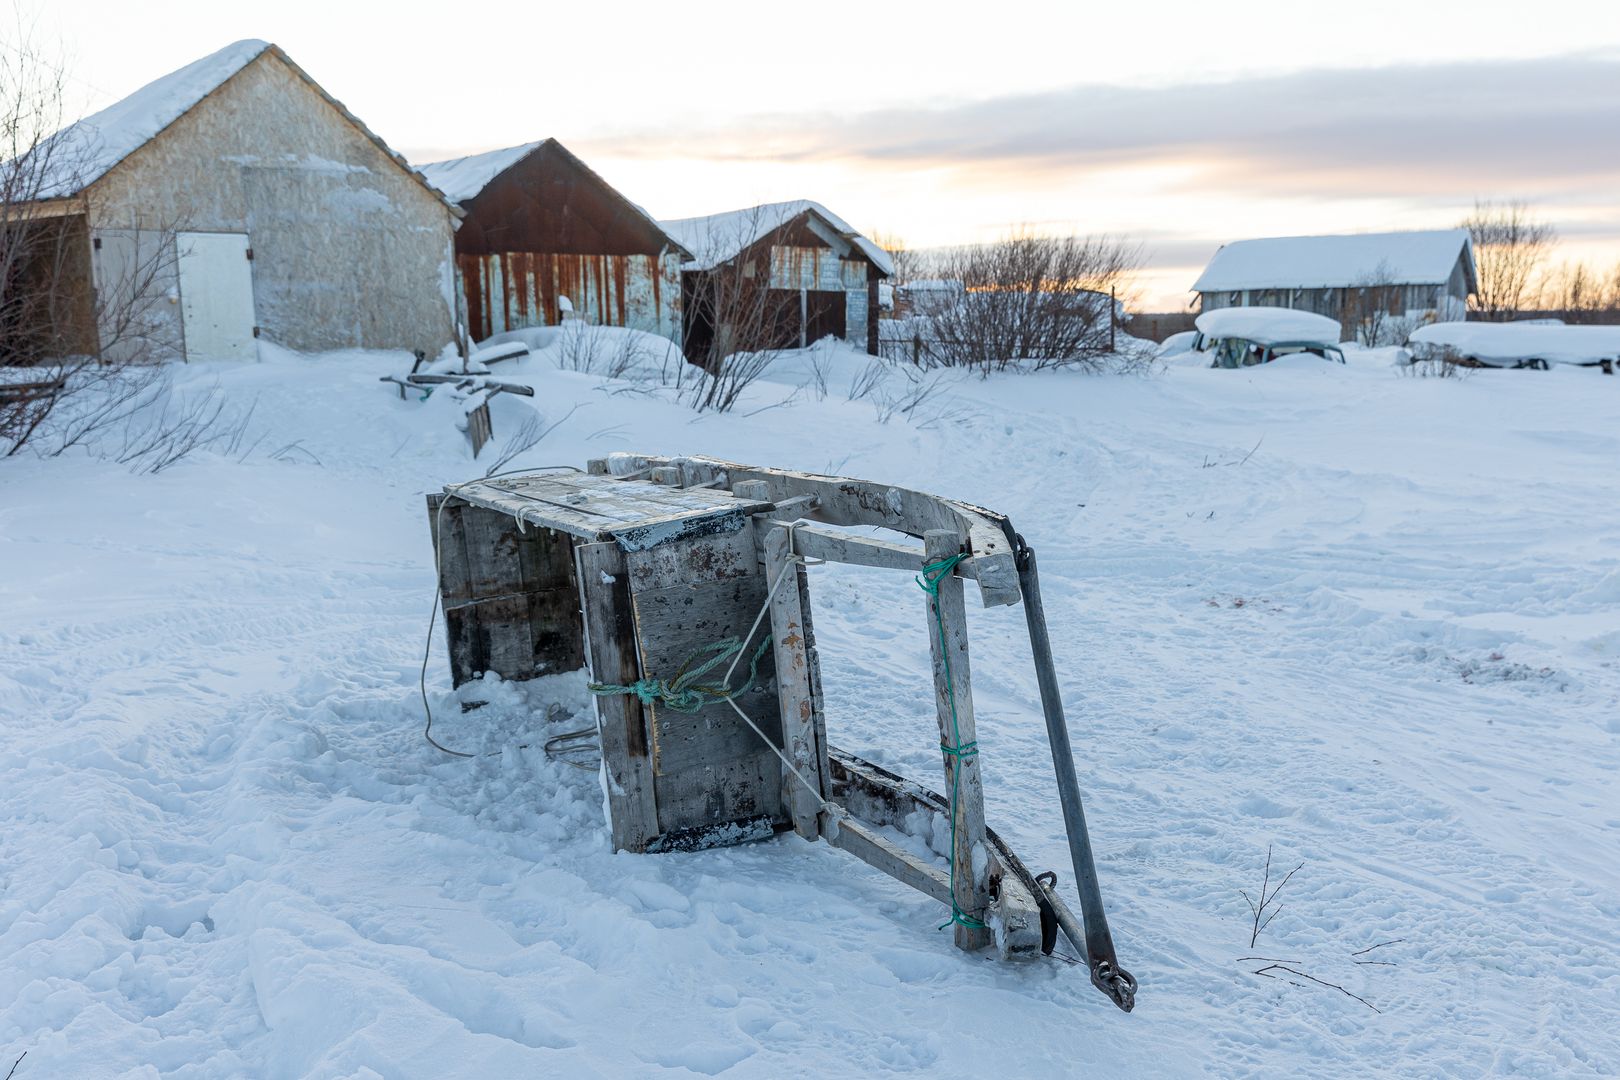 Обратная сторона села, где расположены гаражи, в которых местные держат снегоходы и прочий необходимый инвентарь.